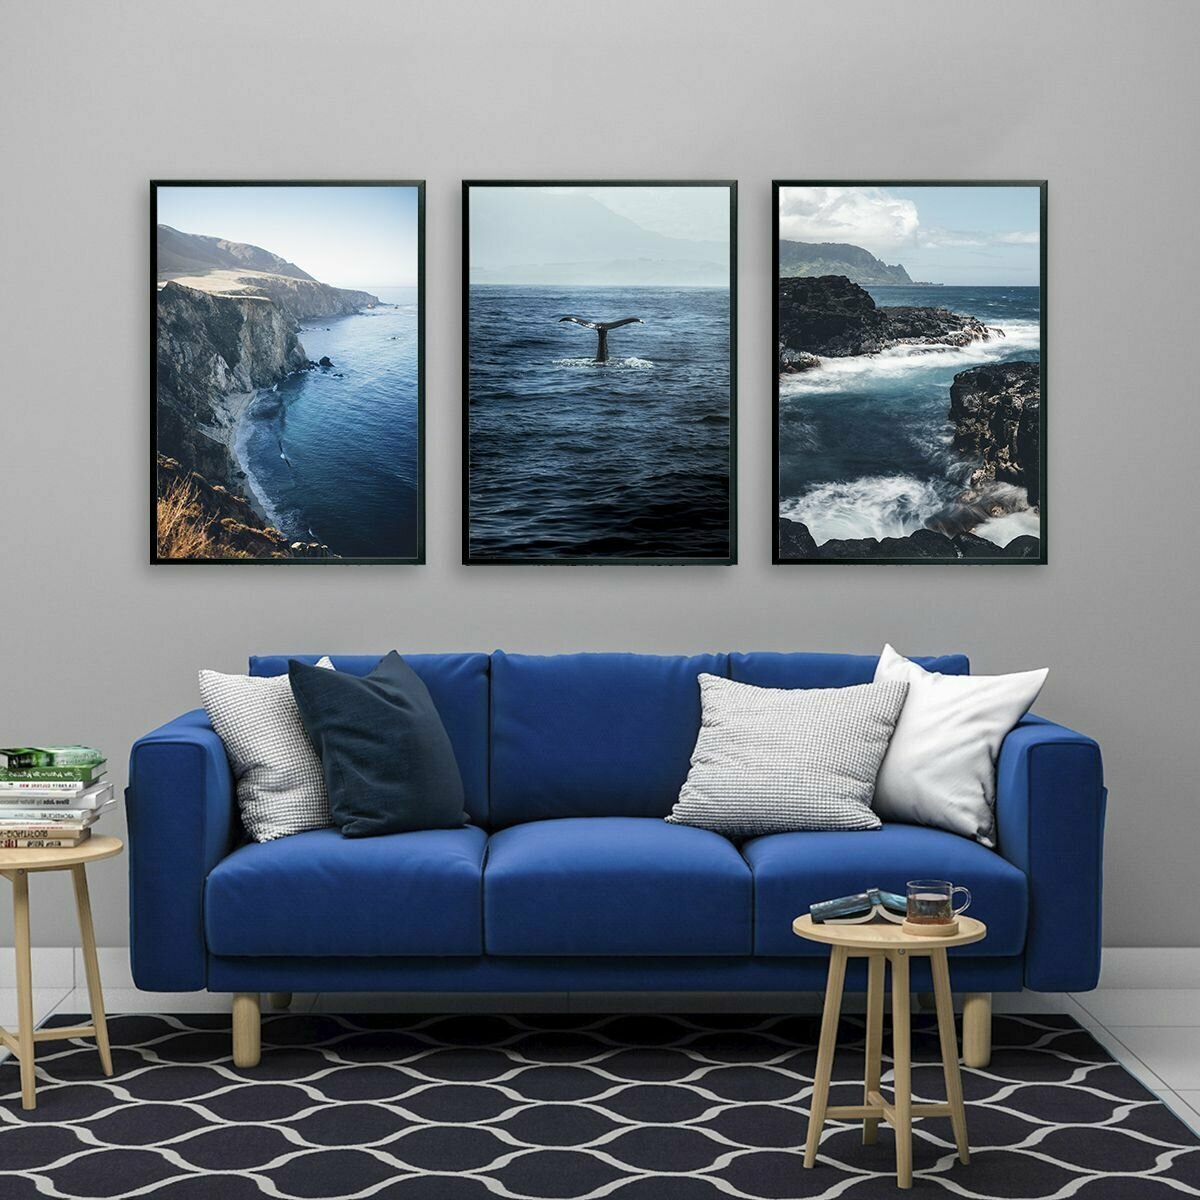 Постеры для интерьера "Ocean. Океан", постеры на стену 50х70 см, 3 шт.